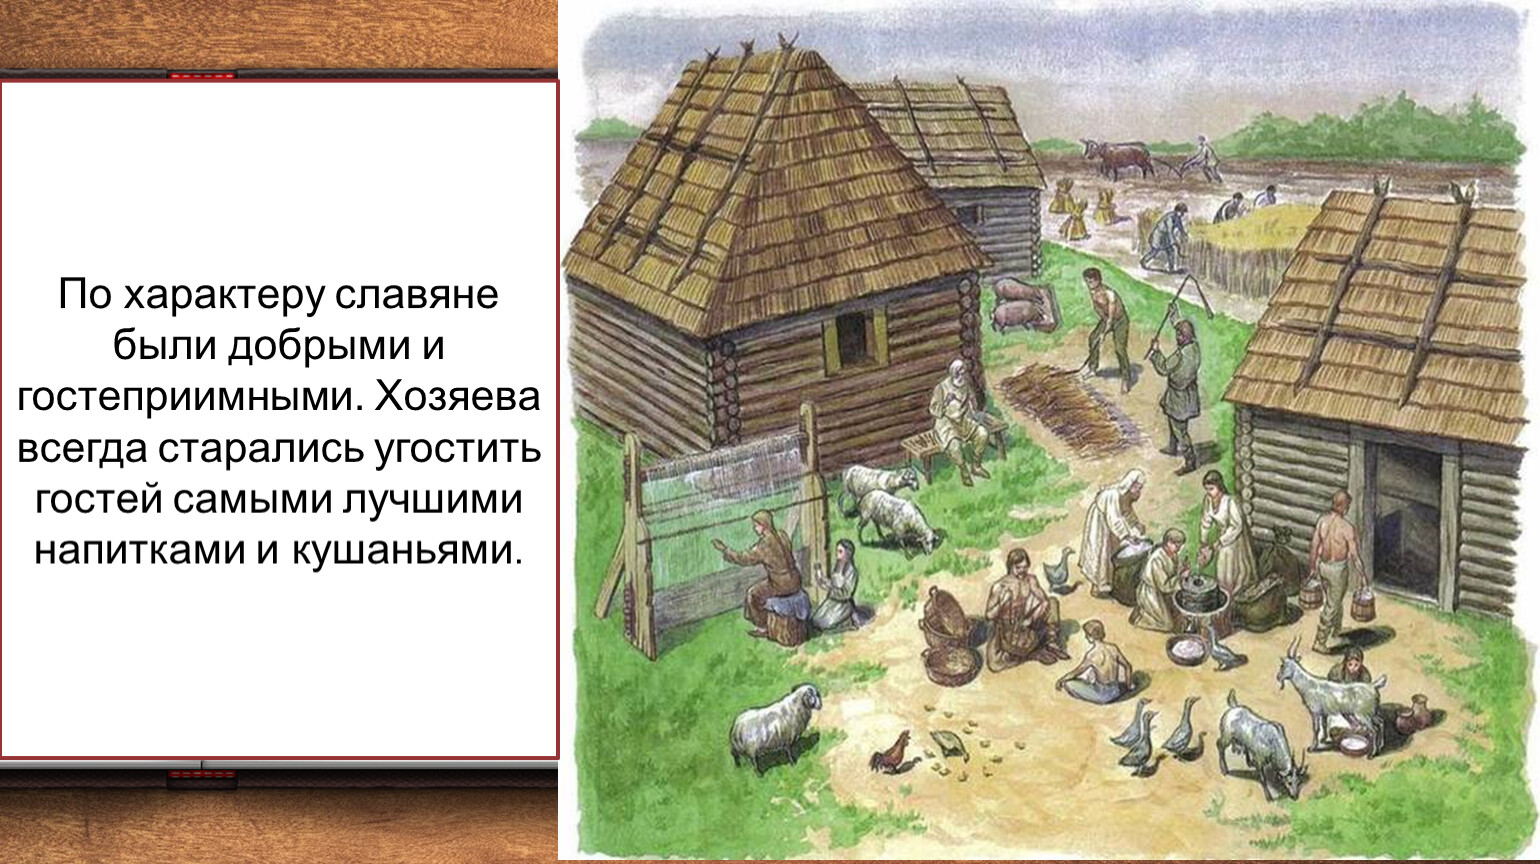 Скотоводство восточных славян